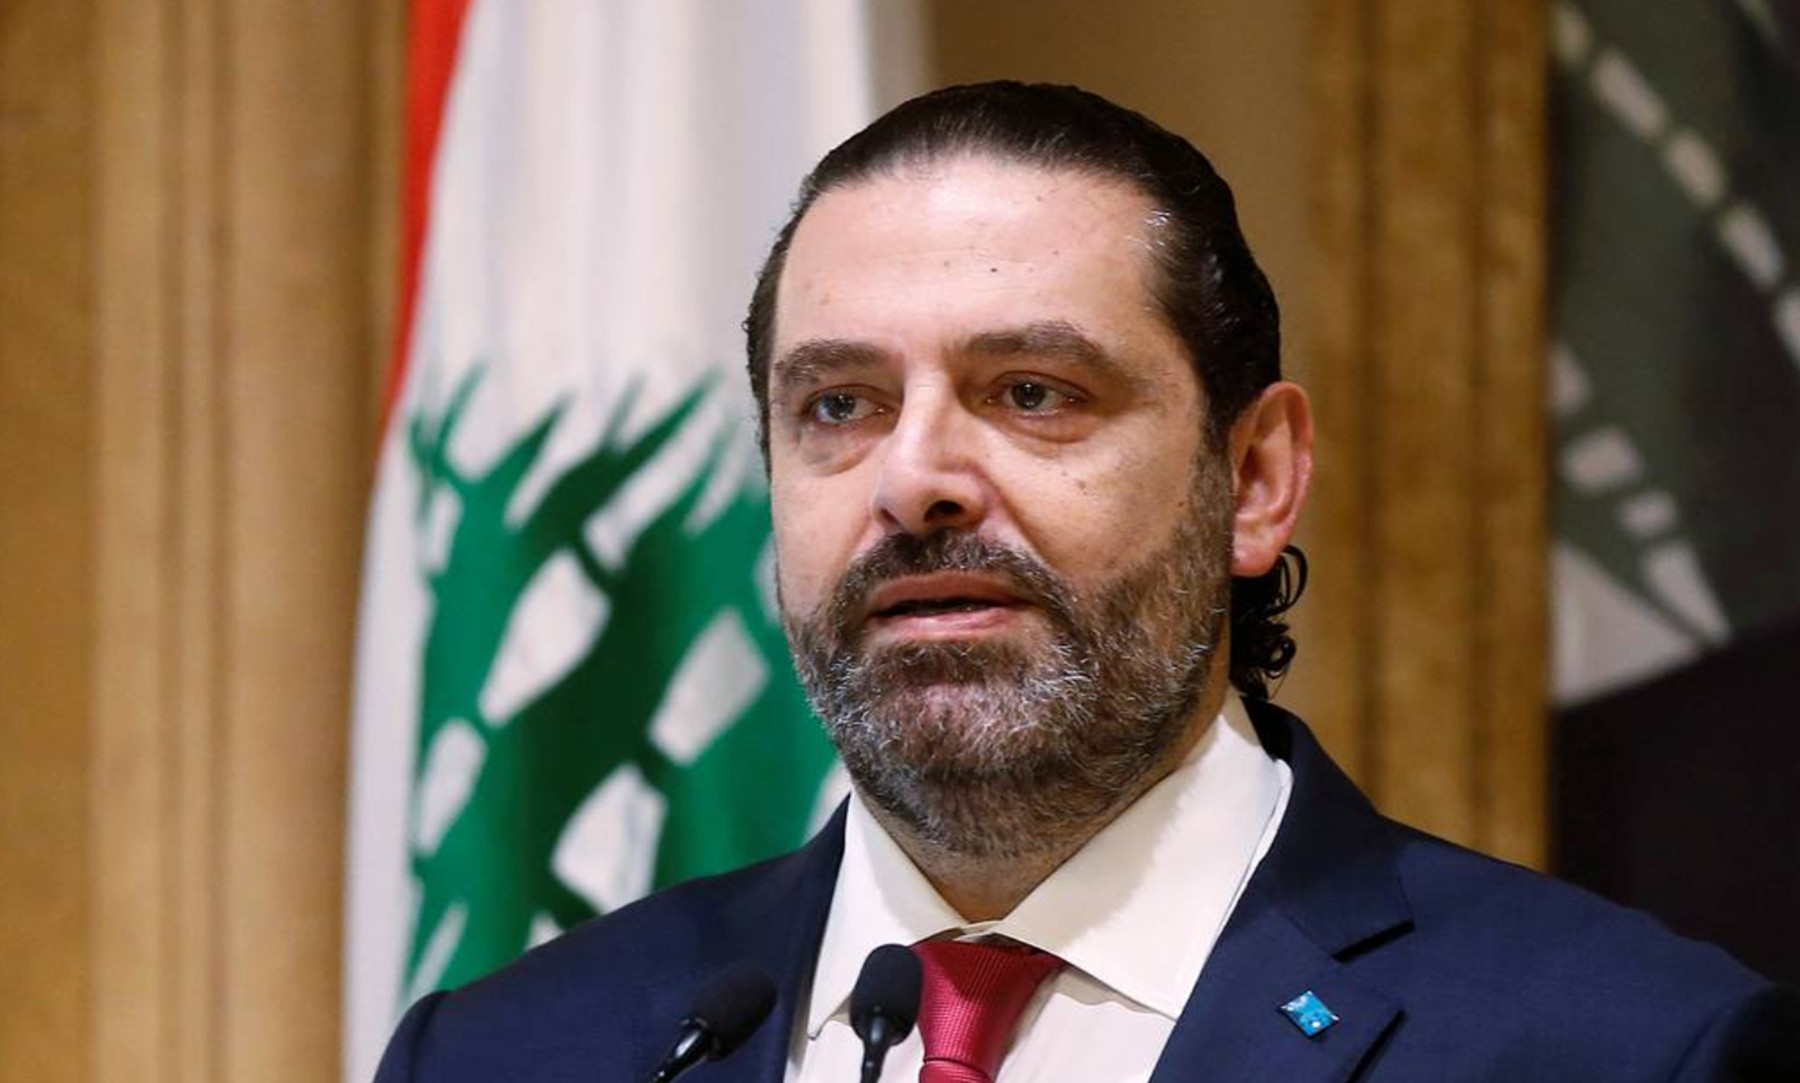 Λίβανος πρωθυπουργός: Παραιτήθηκε ο Σαάντ Χαρίρι – Οι διαφωνίες με τον πρόεδρο